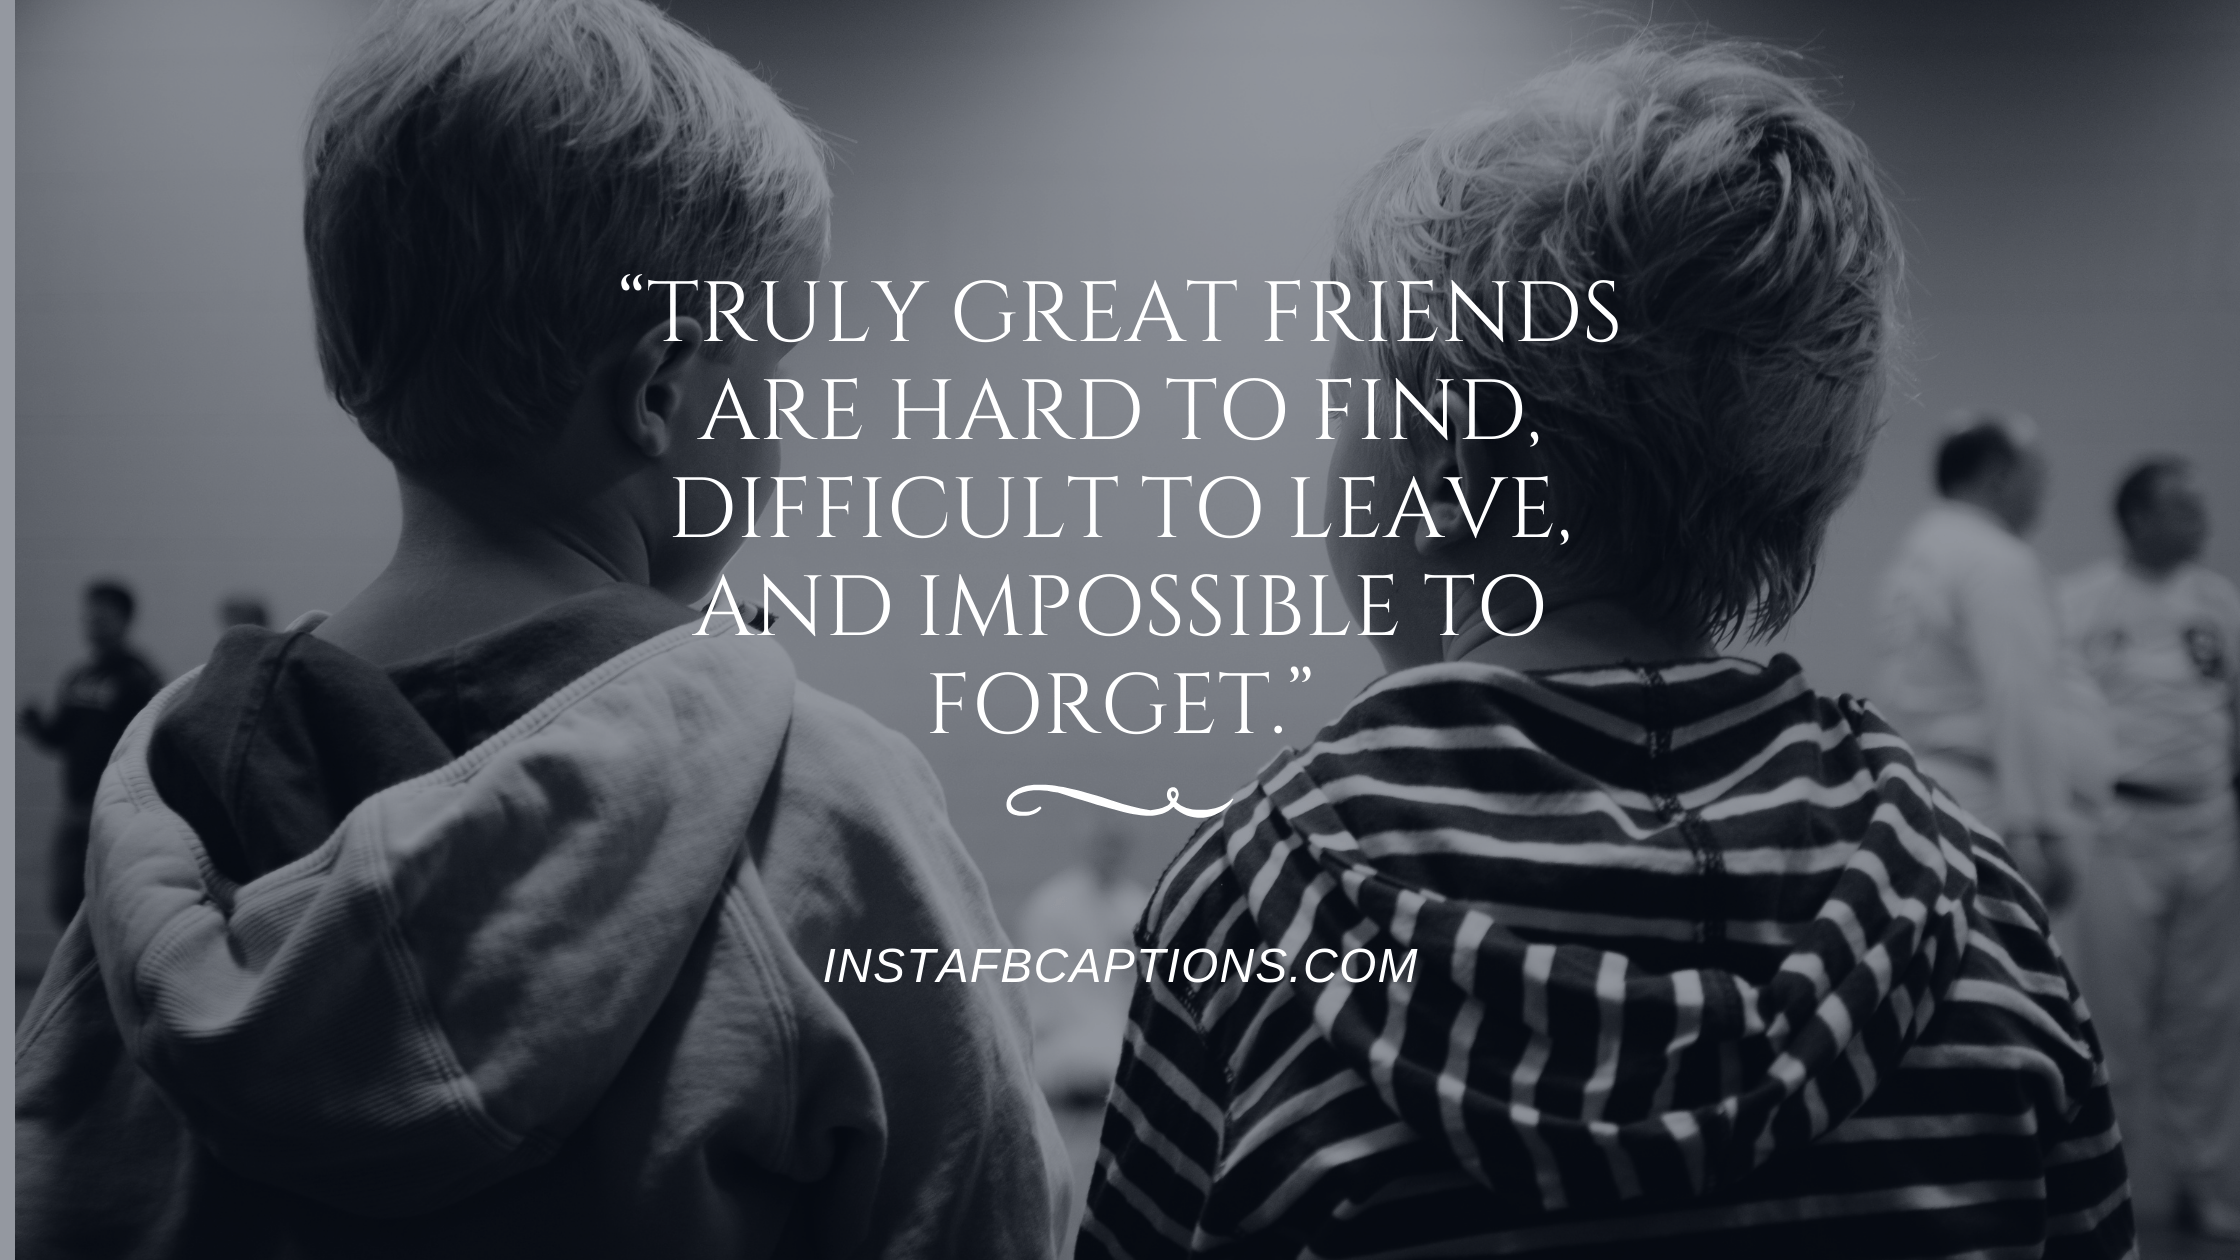 Friendship Bond Short Quotes  - Friendship bond Short Quotes - Unbreakable Friendship Bond Captions for Instagram in 2022